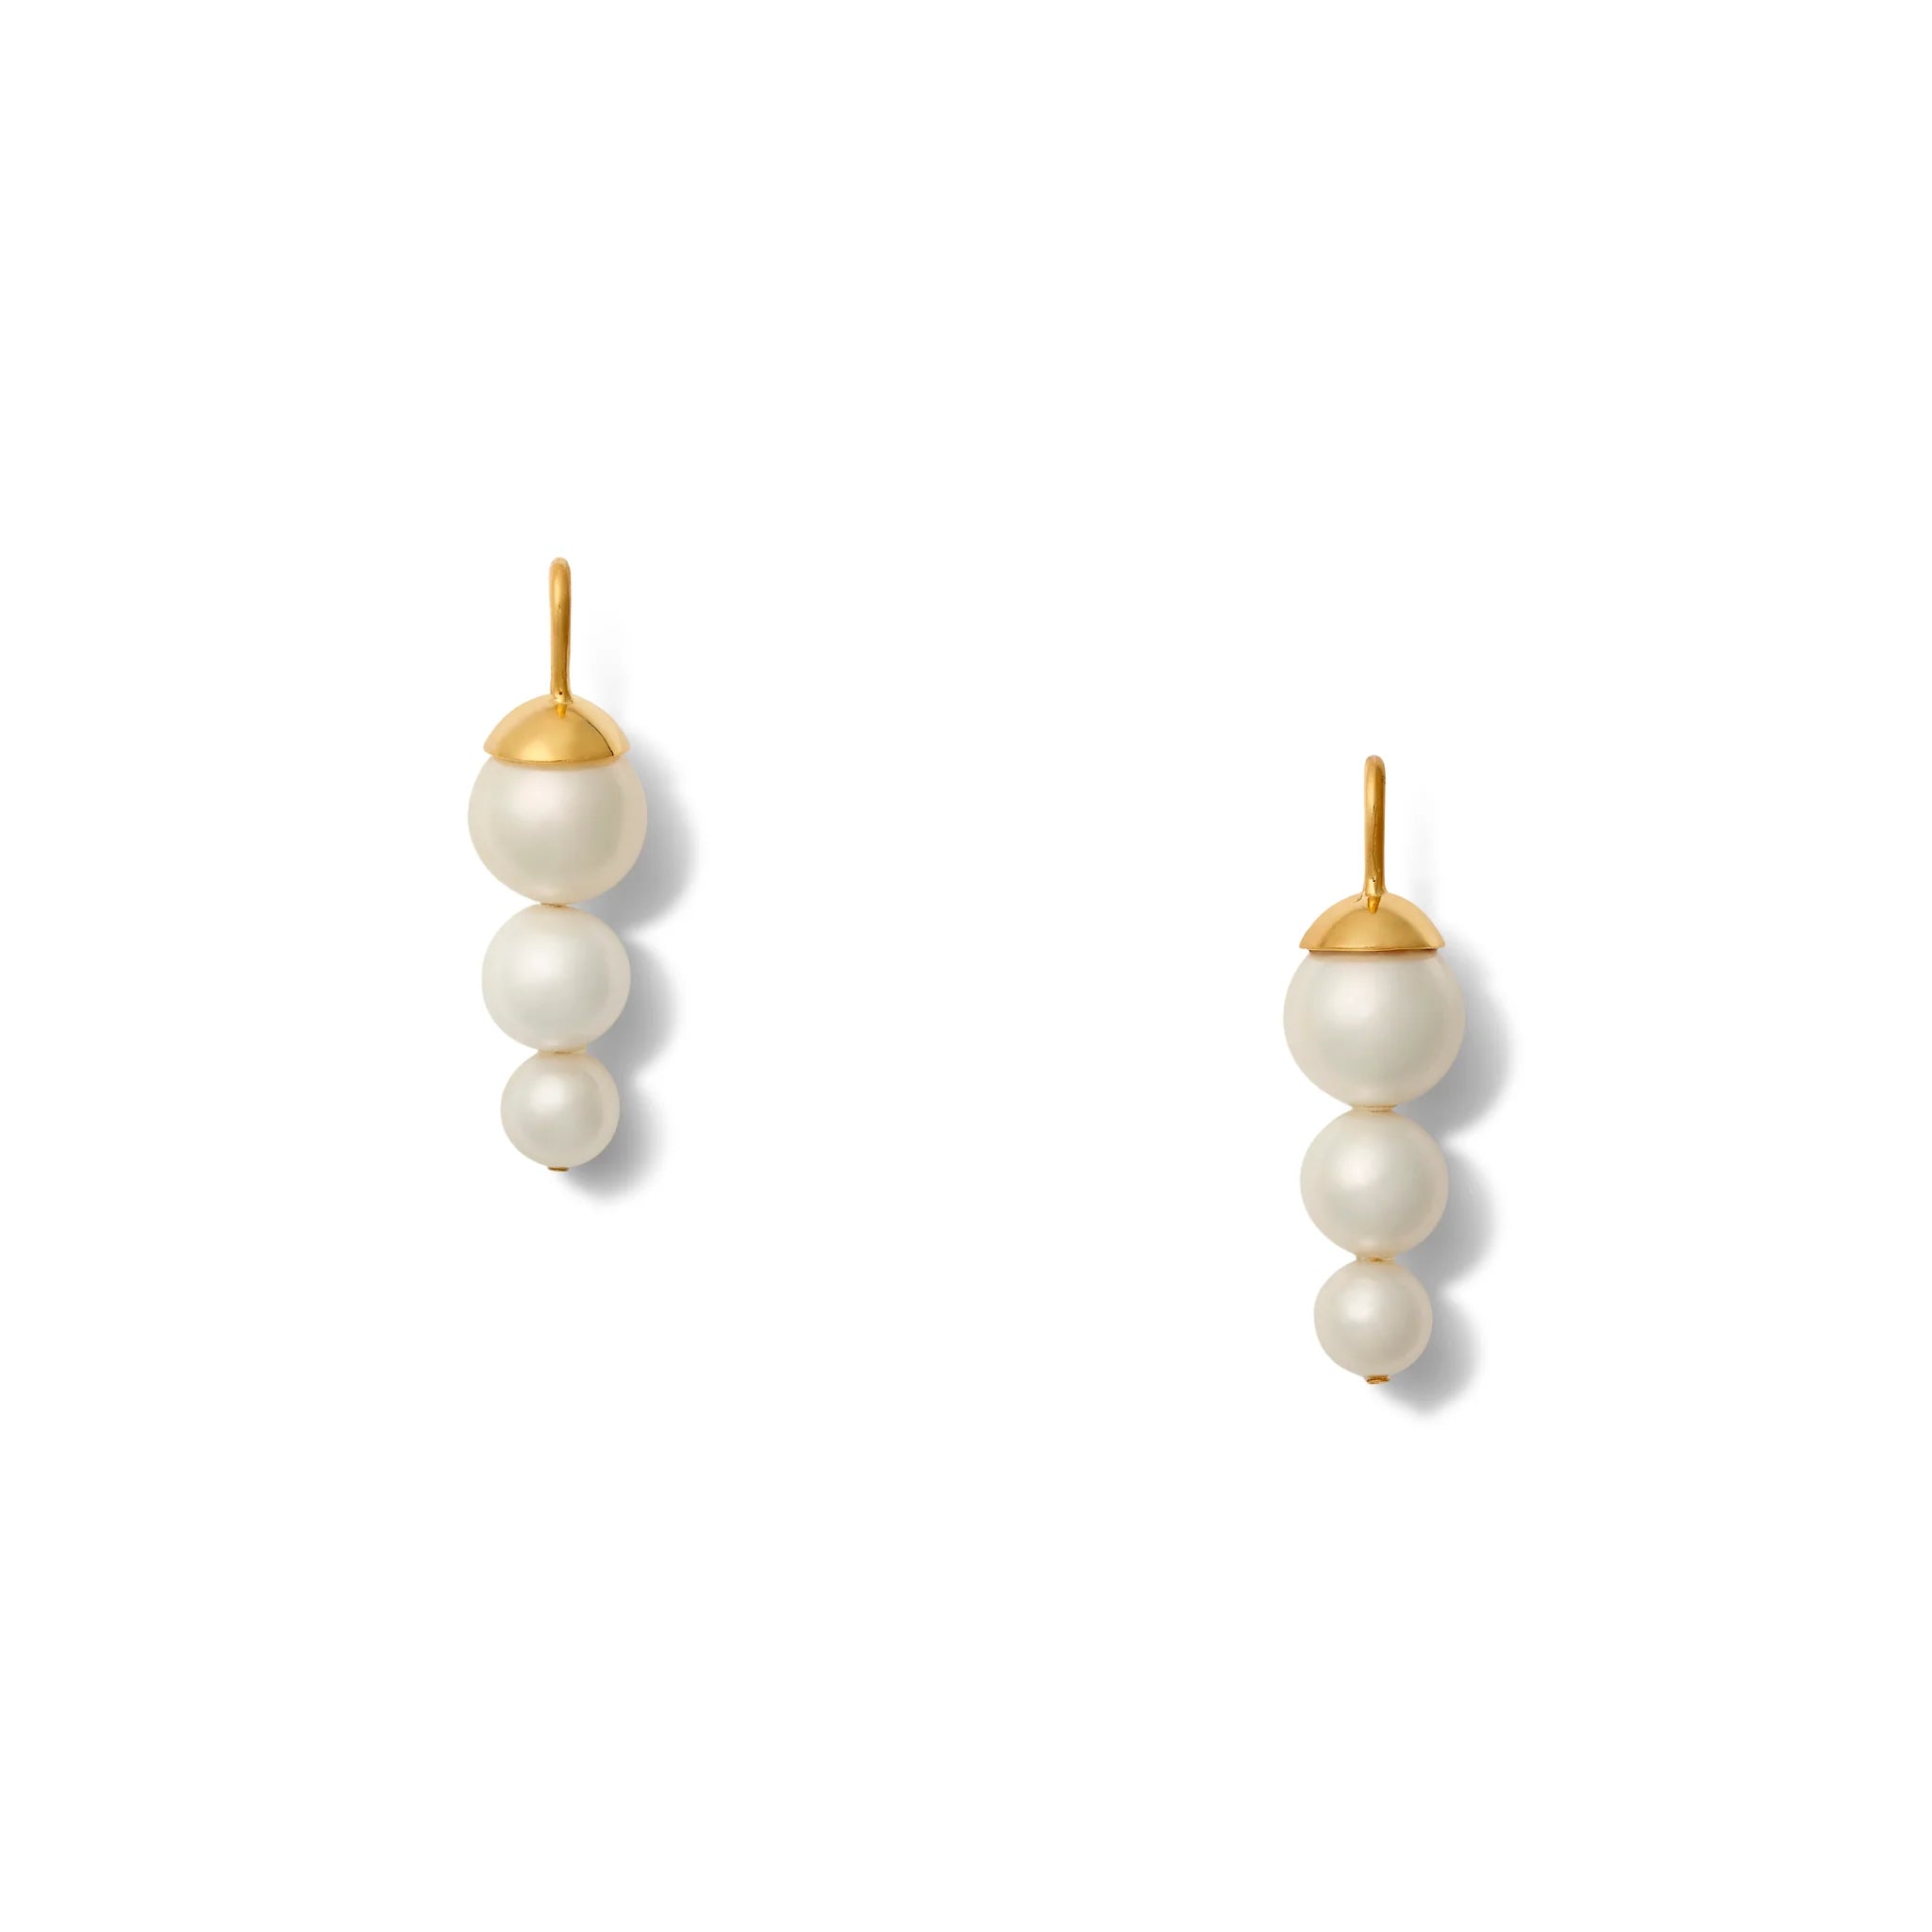 Petite Pea Pod Pearls - White/Gold